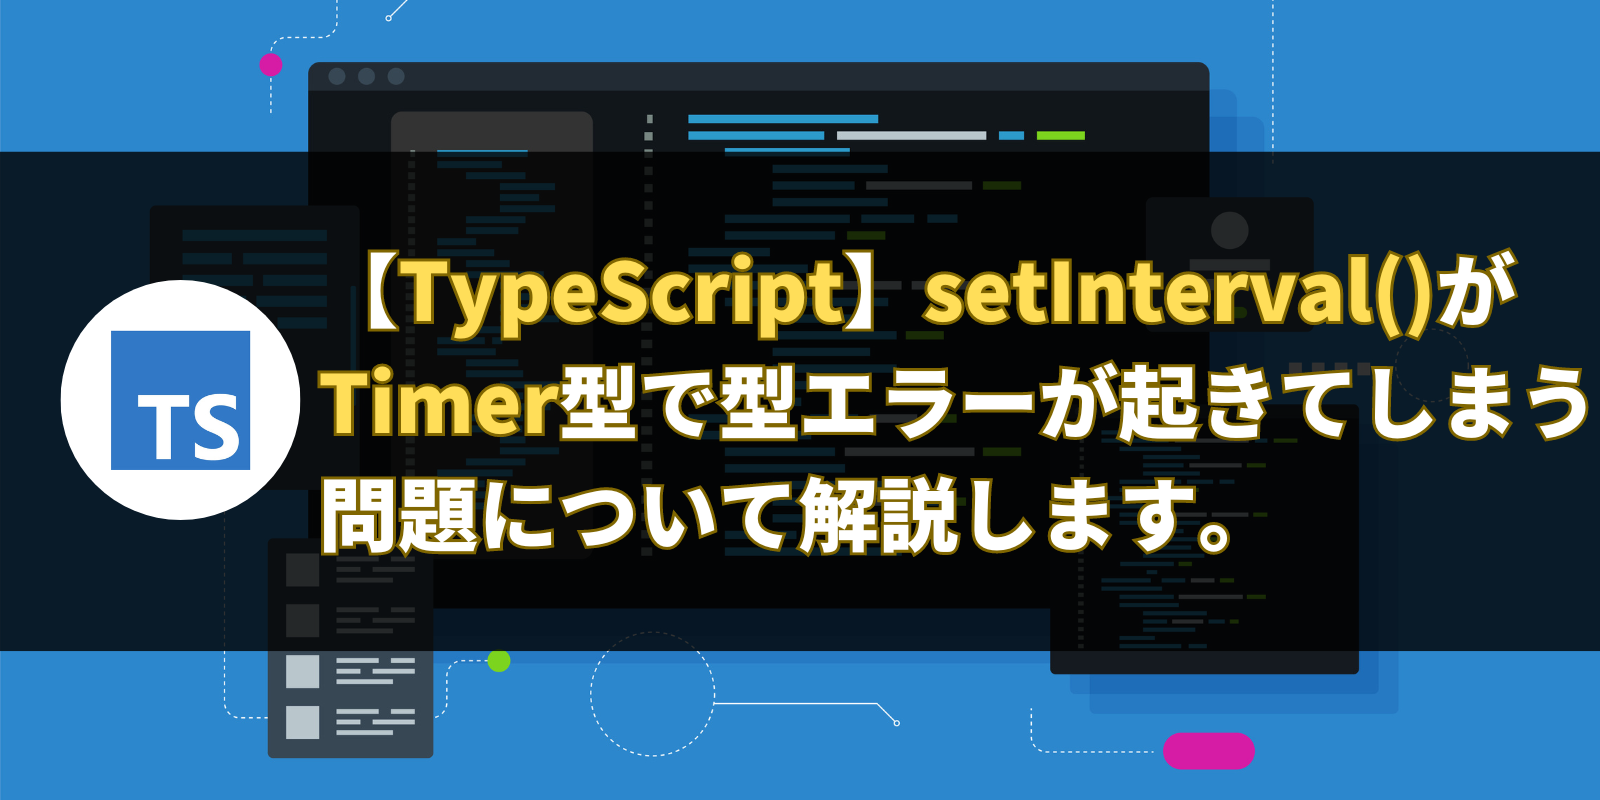 【TypeScript】setInterval()がTimer型で型エラーが起きてしまう問題について解説します。